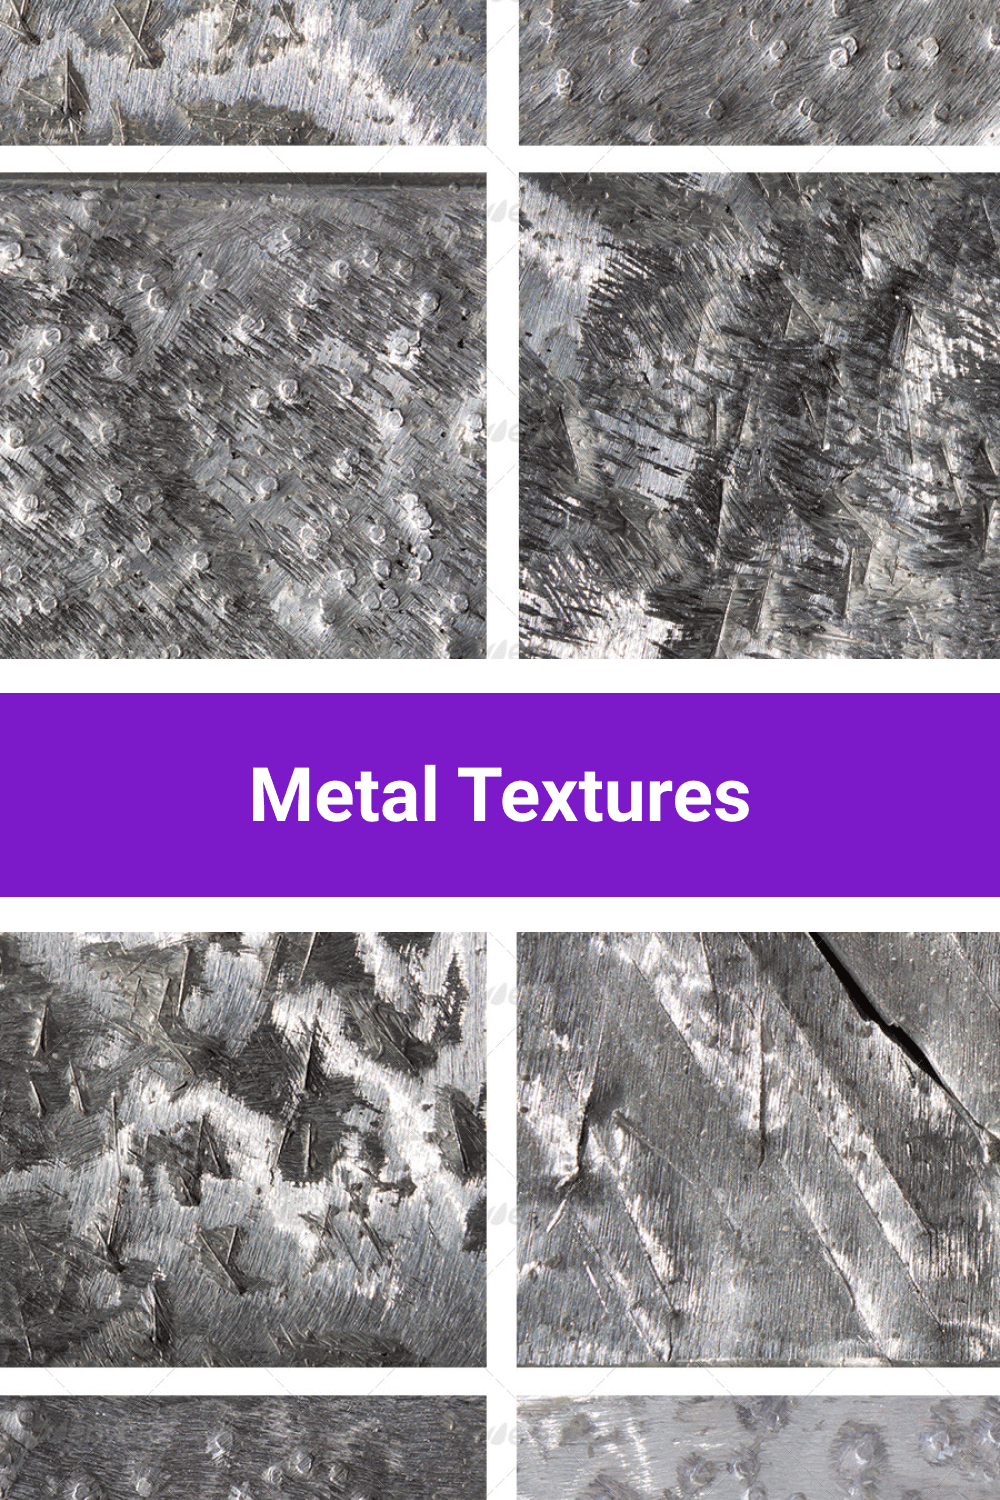 Metal textures.